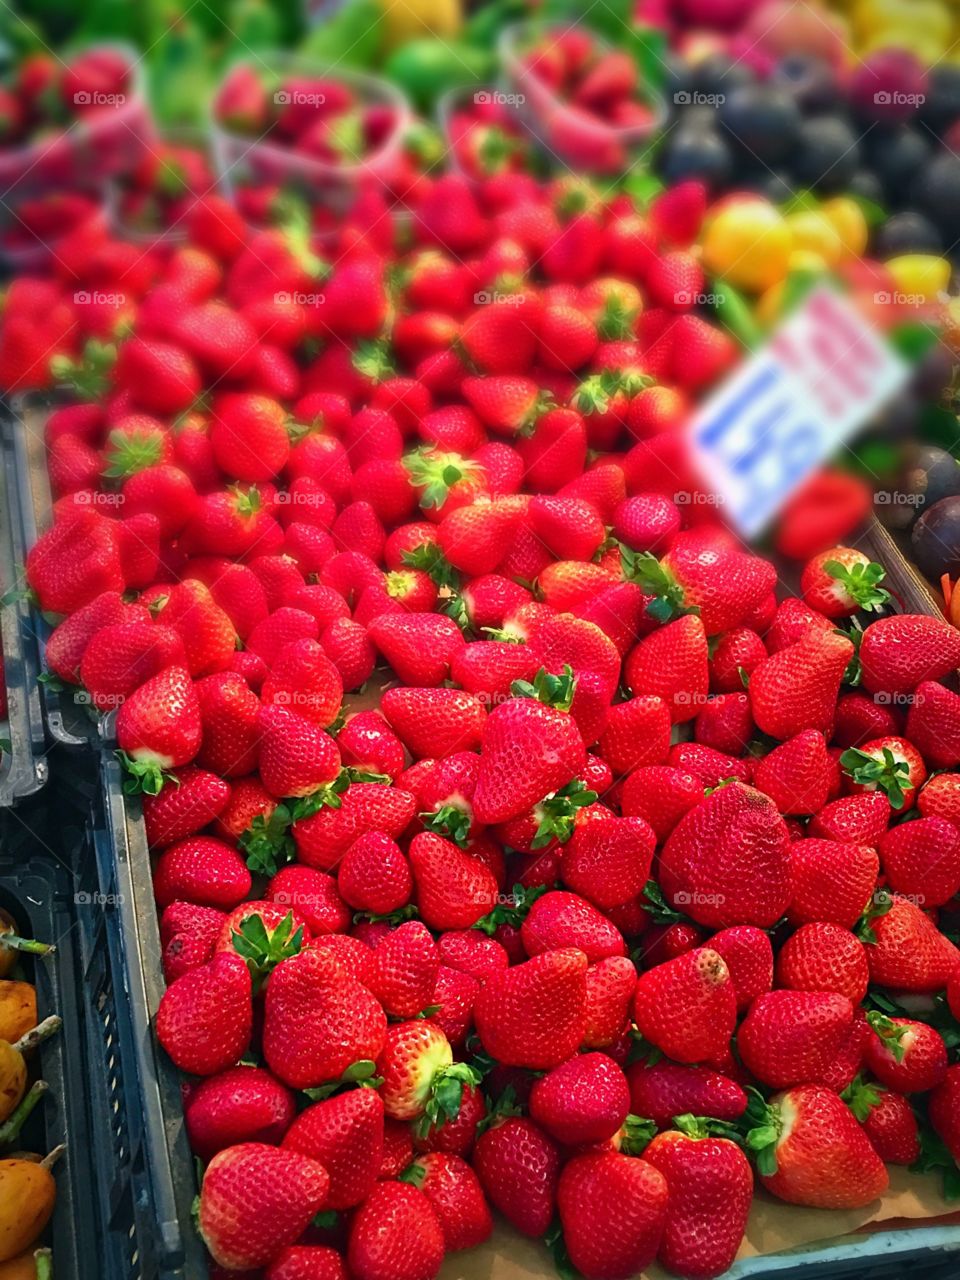 Lovely strawberries 